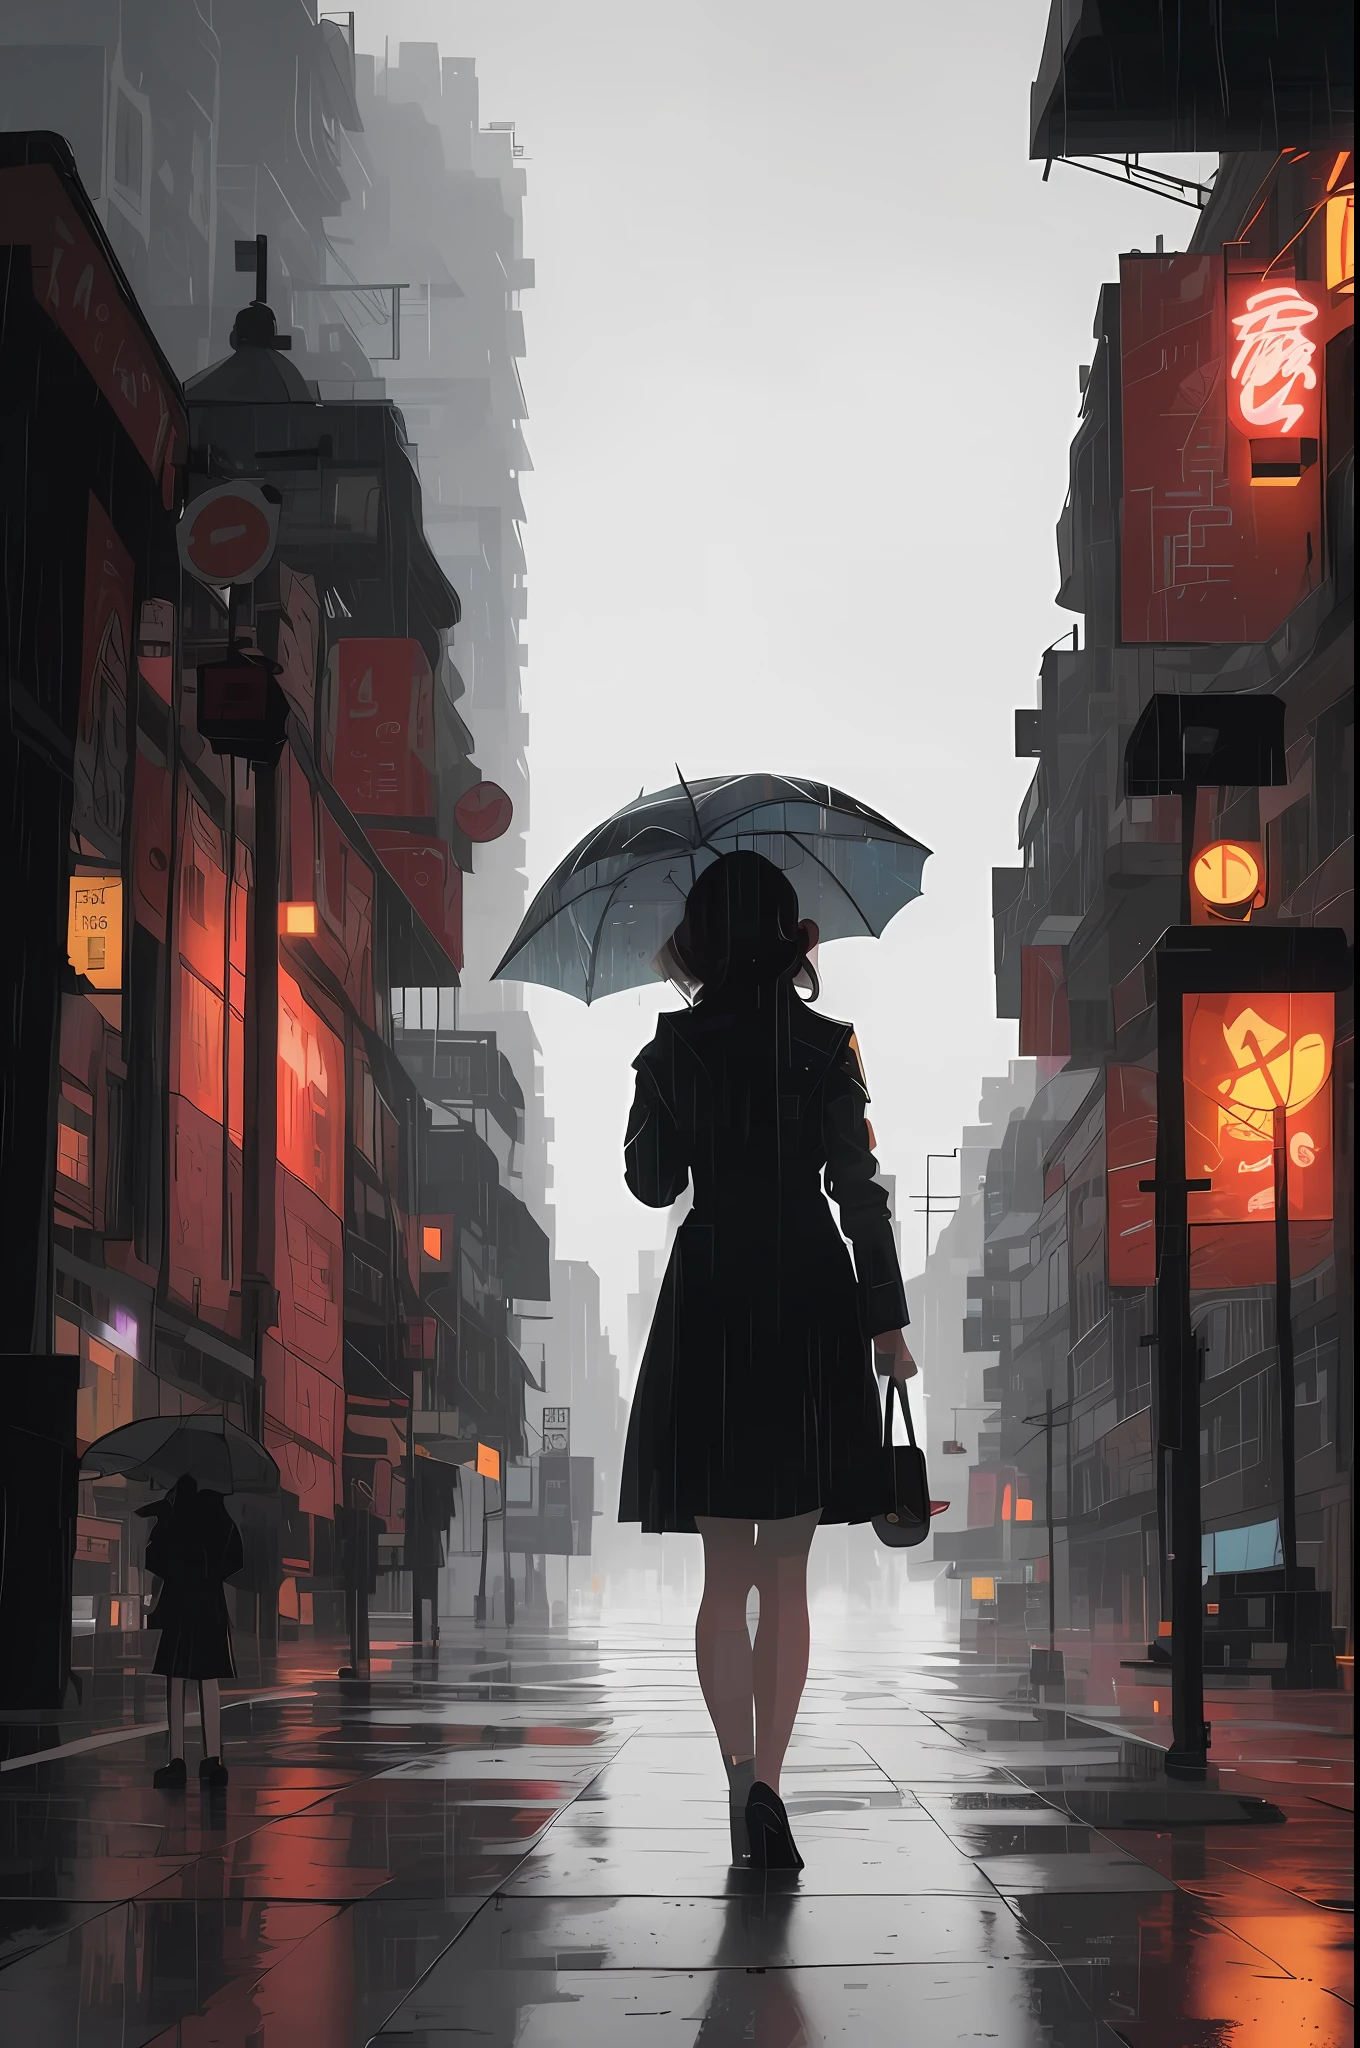 傘を持って通りを歩いている女性がいます, 雨のサイバーパンクシティ, 街を散策, 雨の通りs in the background, グウェイズ風のアートワーク, 街路に立っている, 雨の通り, サイバーパンク都市で, style of アレナ・アエナミ, 雨の夜, 芸術的. アレナ・アエナミ, 様式化された都市ファンタジーアート